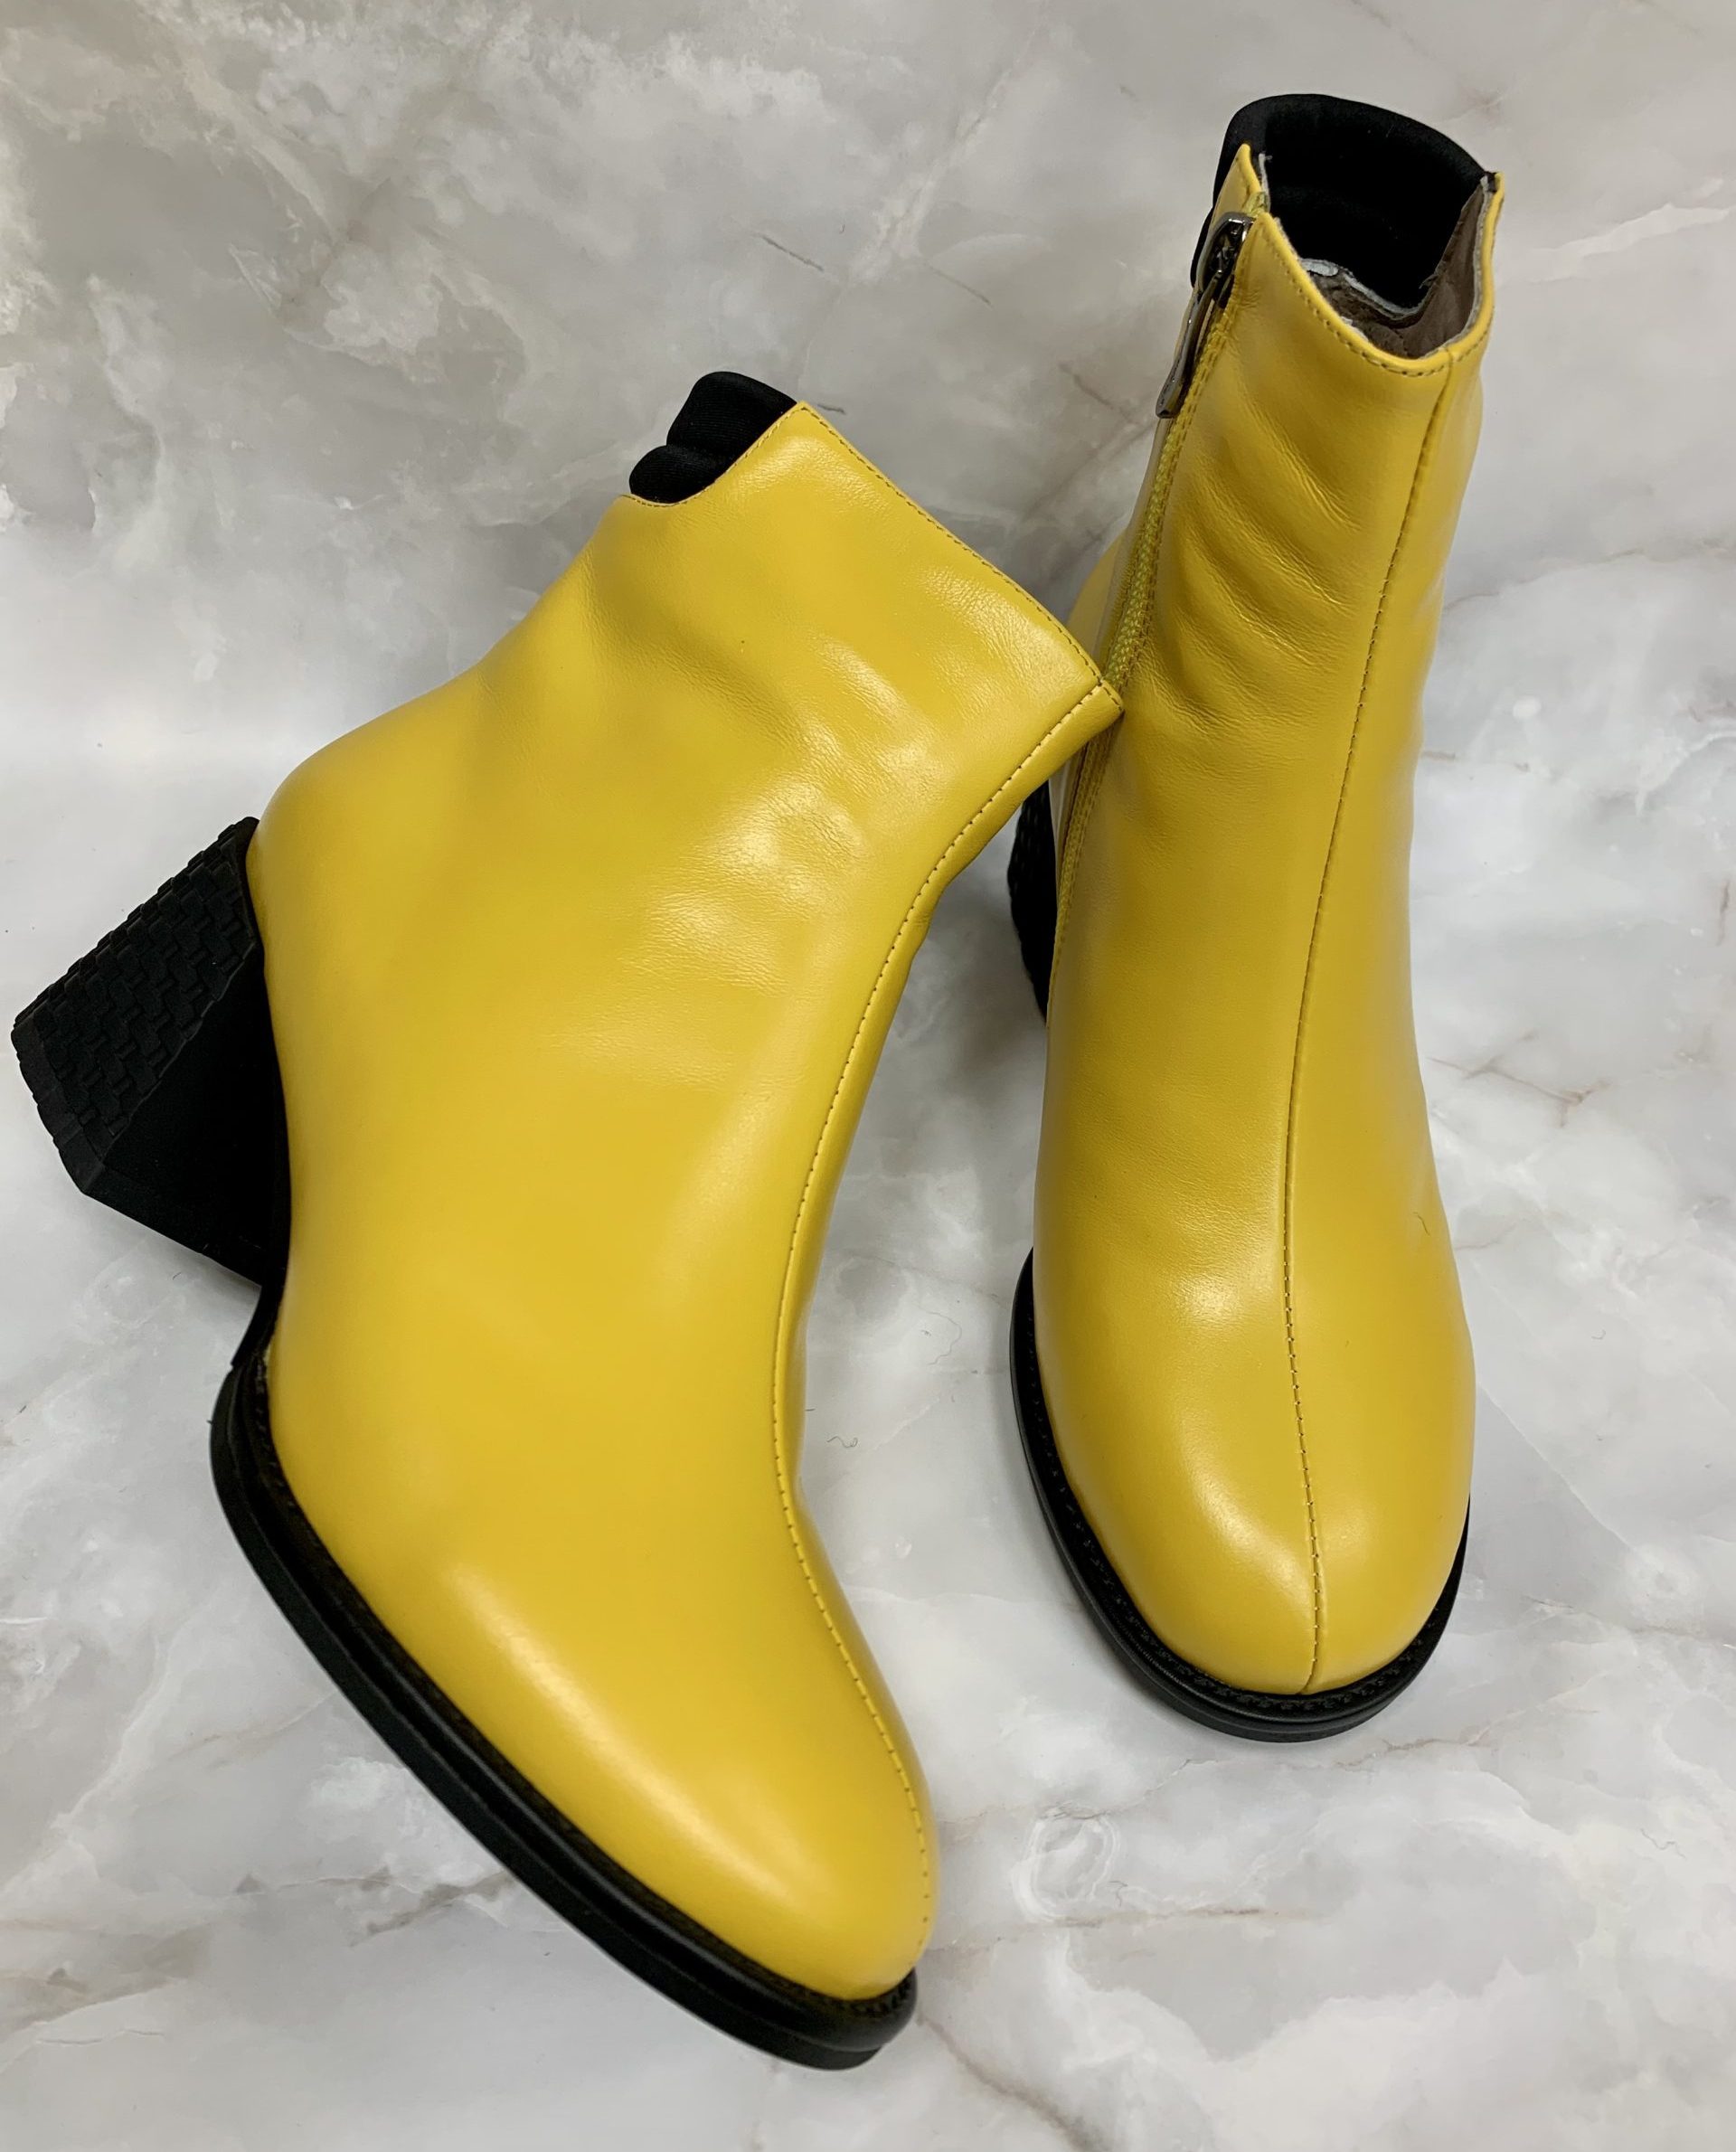 Ботинки женские зима МАИНИЛА желтые - Интернет магазин обуви